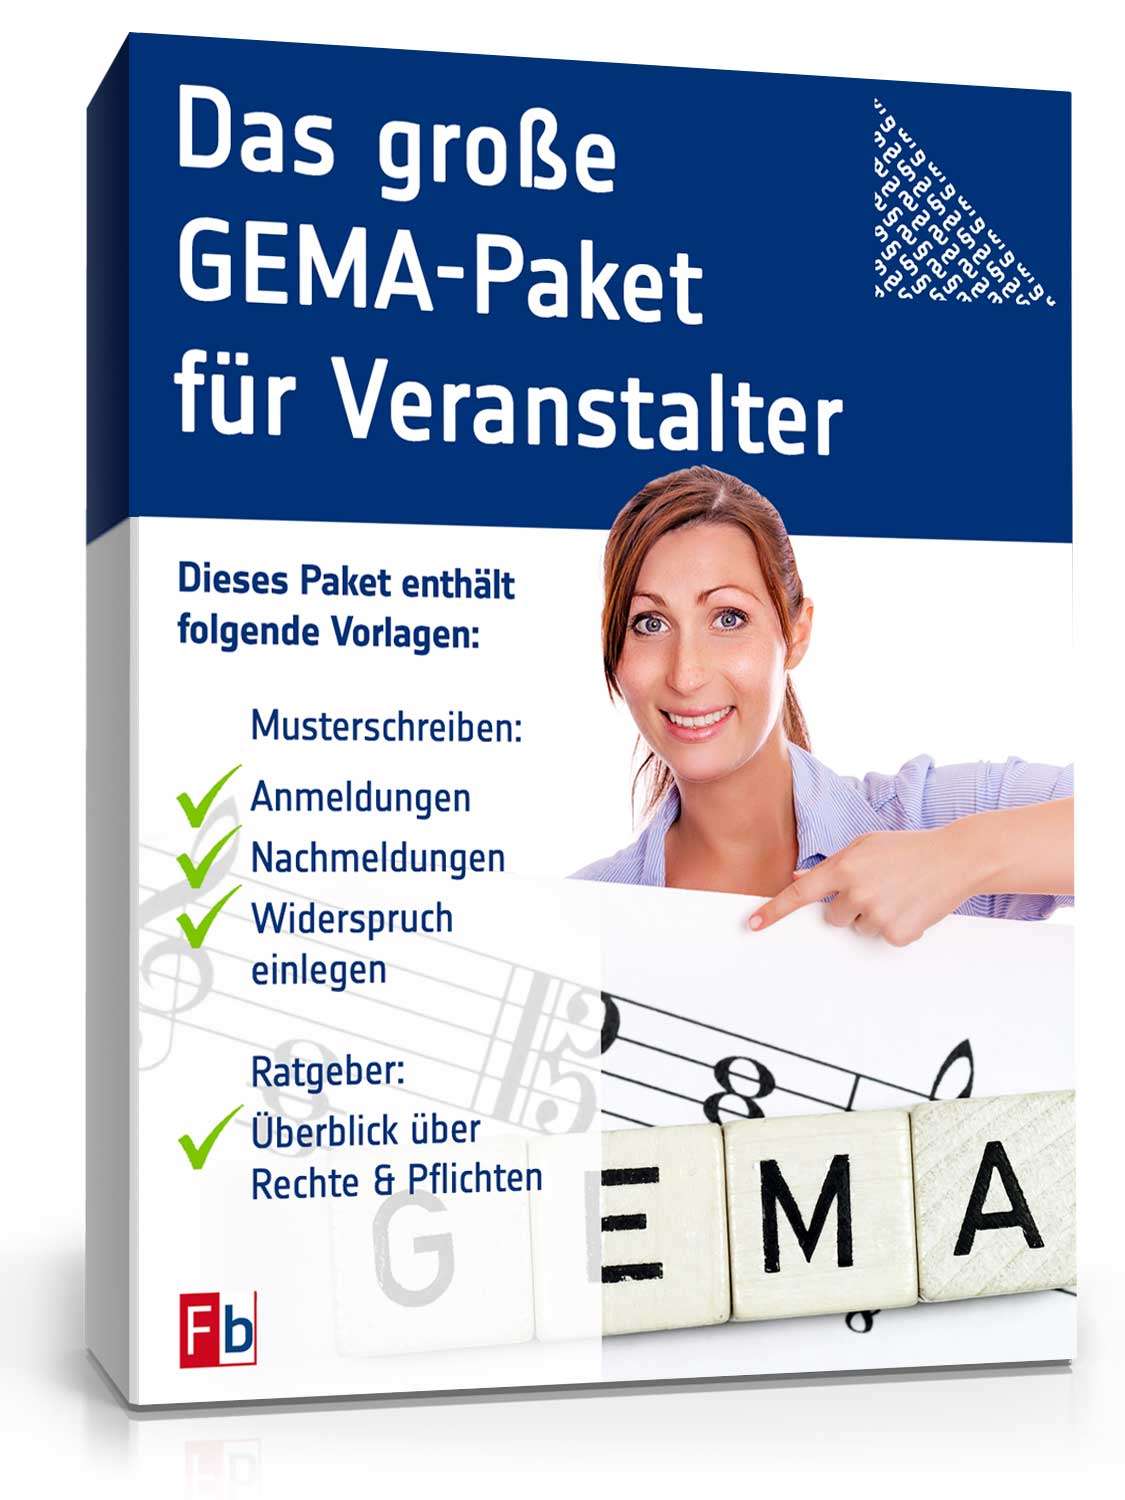 Hauptbild des Produkts: Das große GEMA Paket